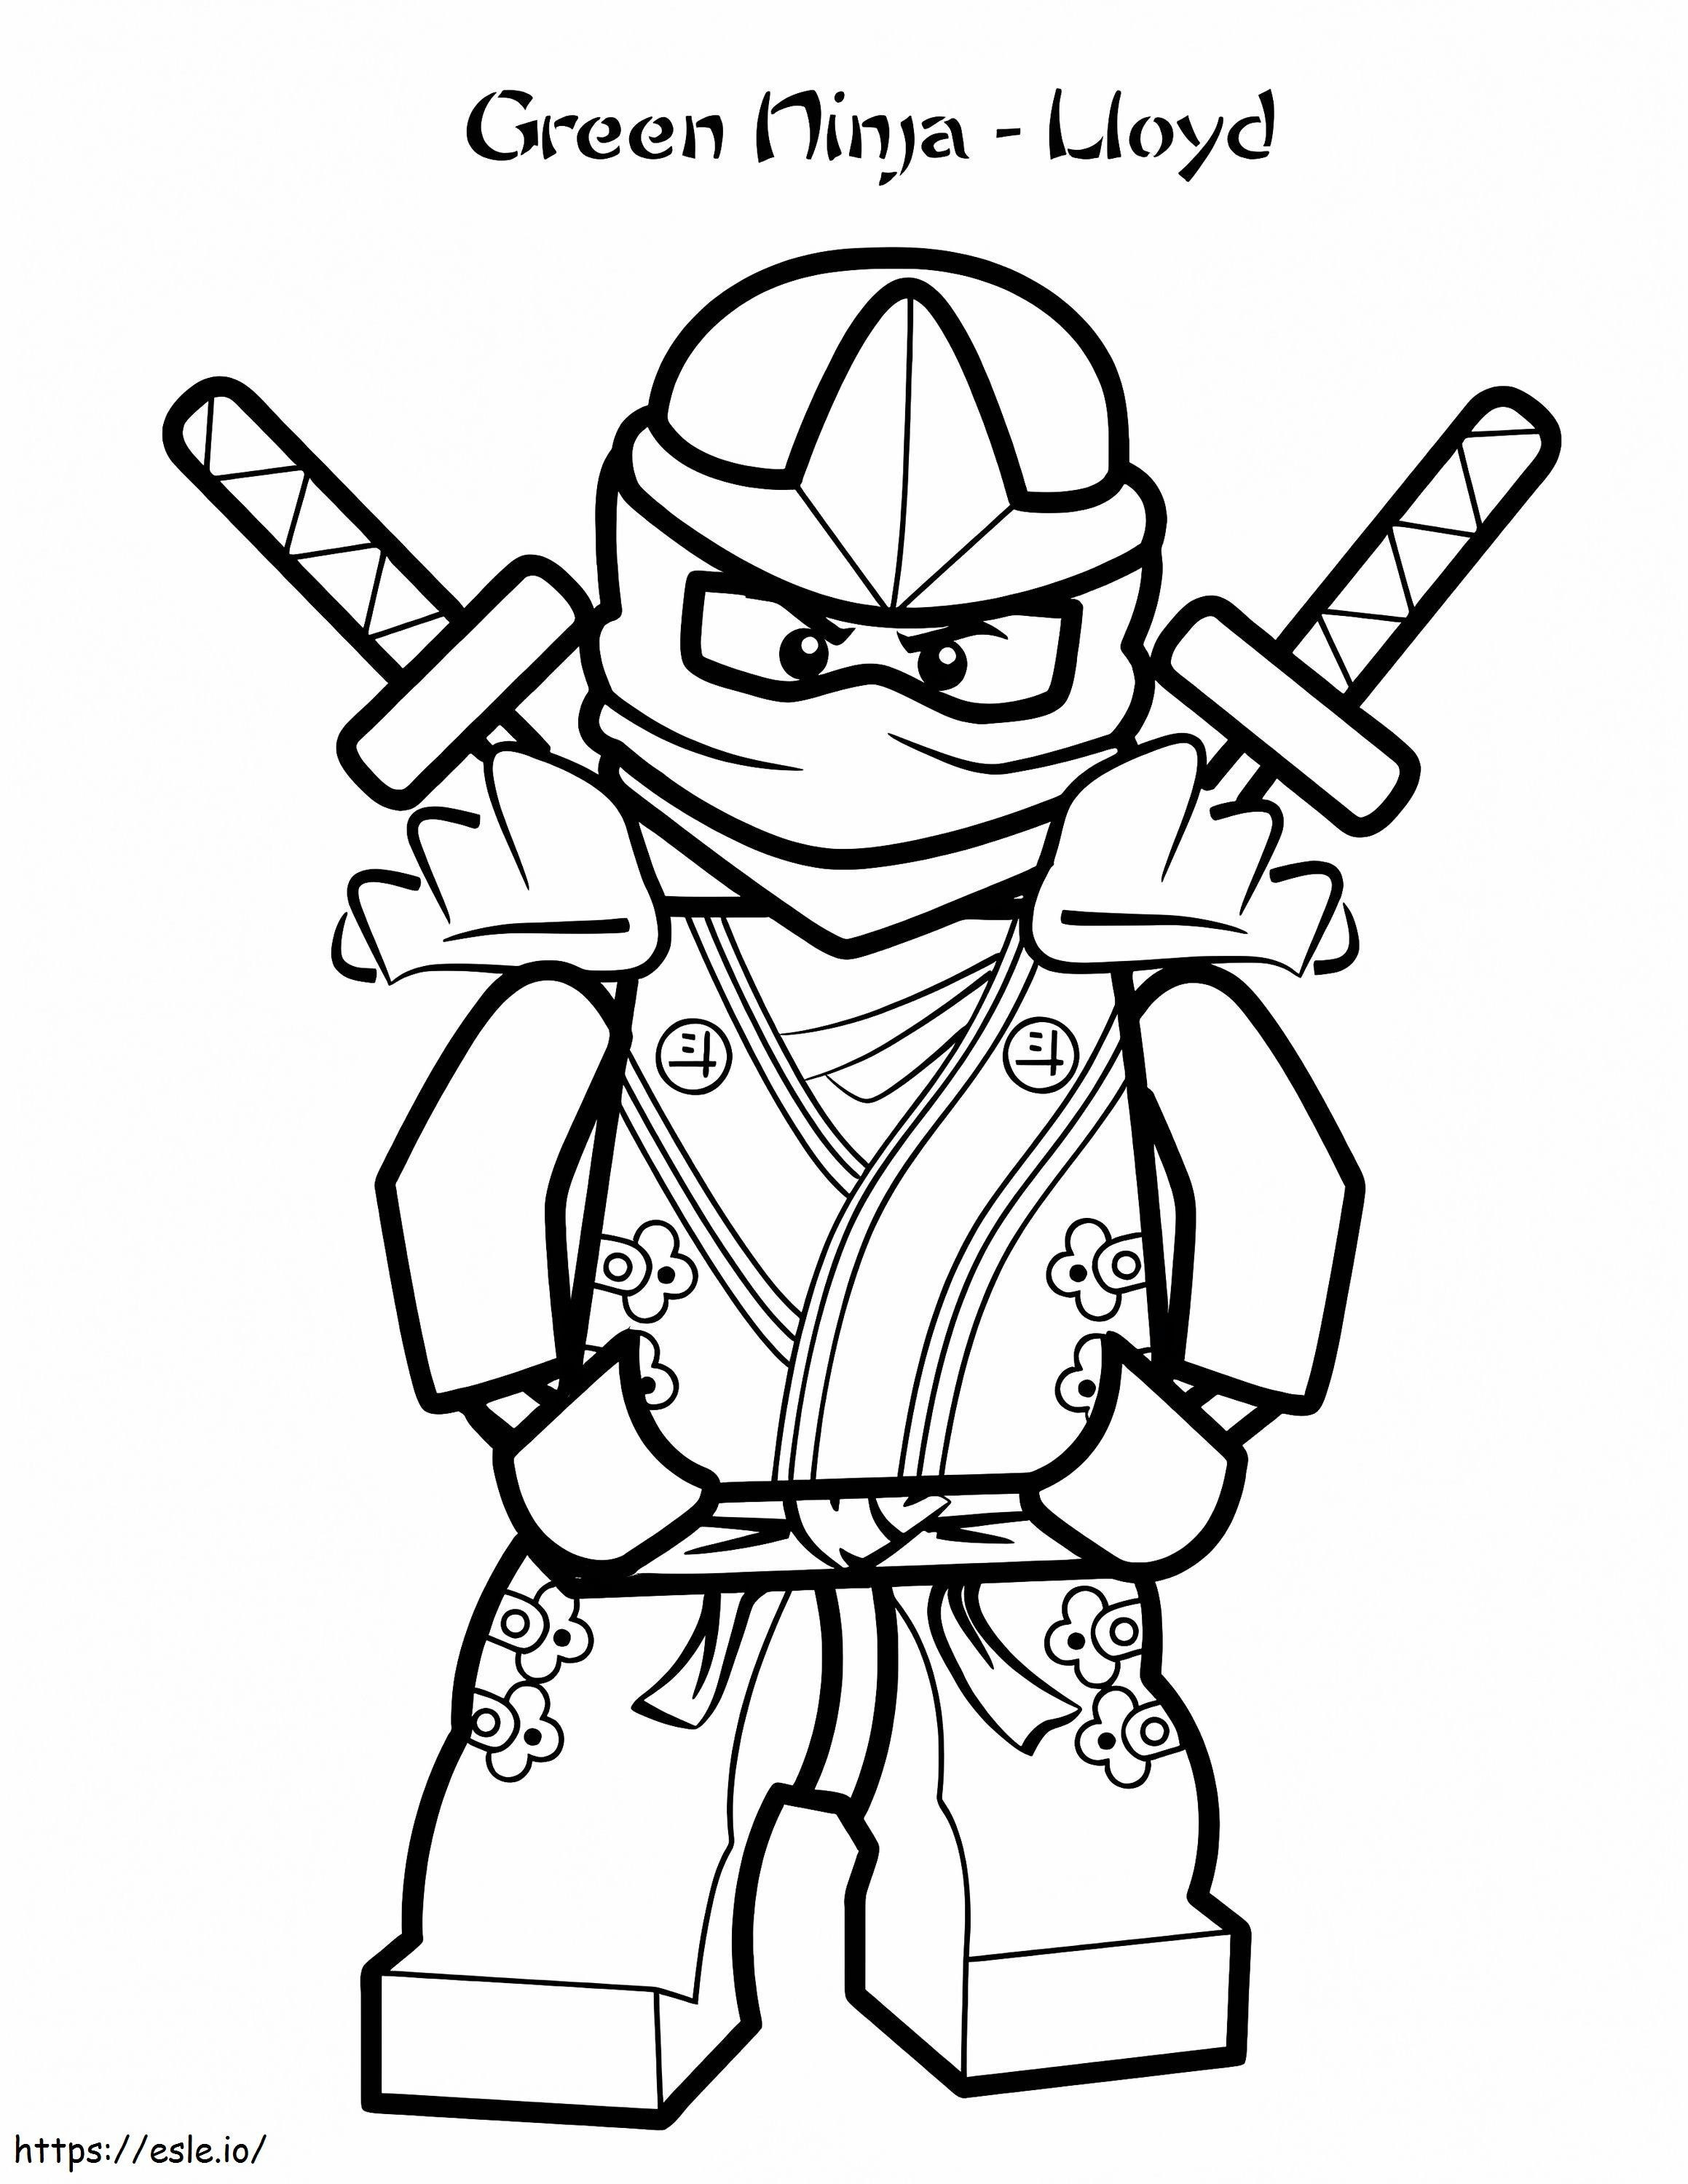 Lloyd z Ninjago kolorowanka